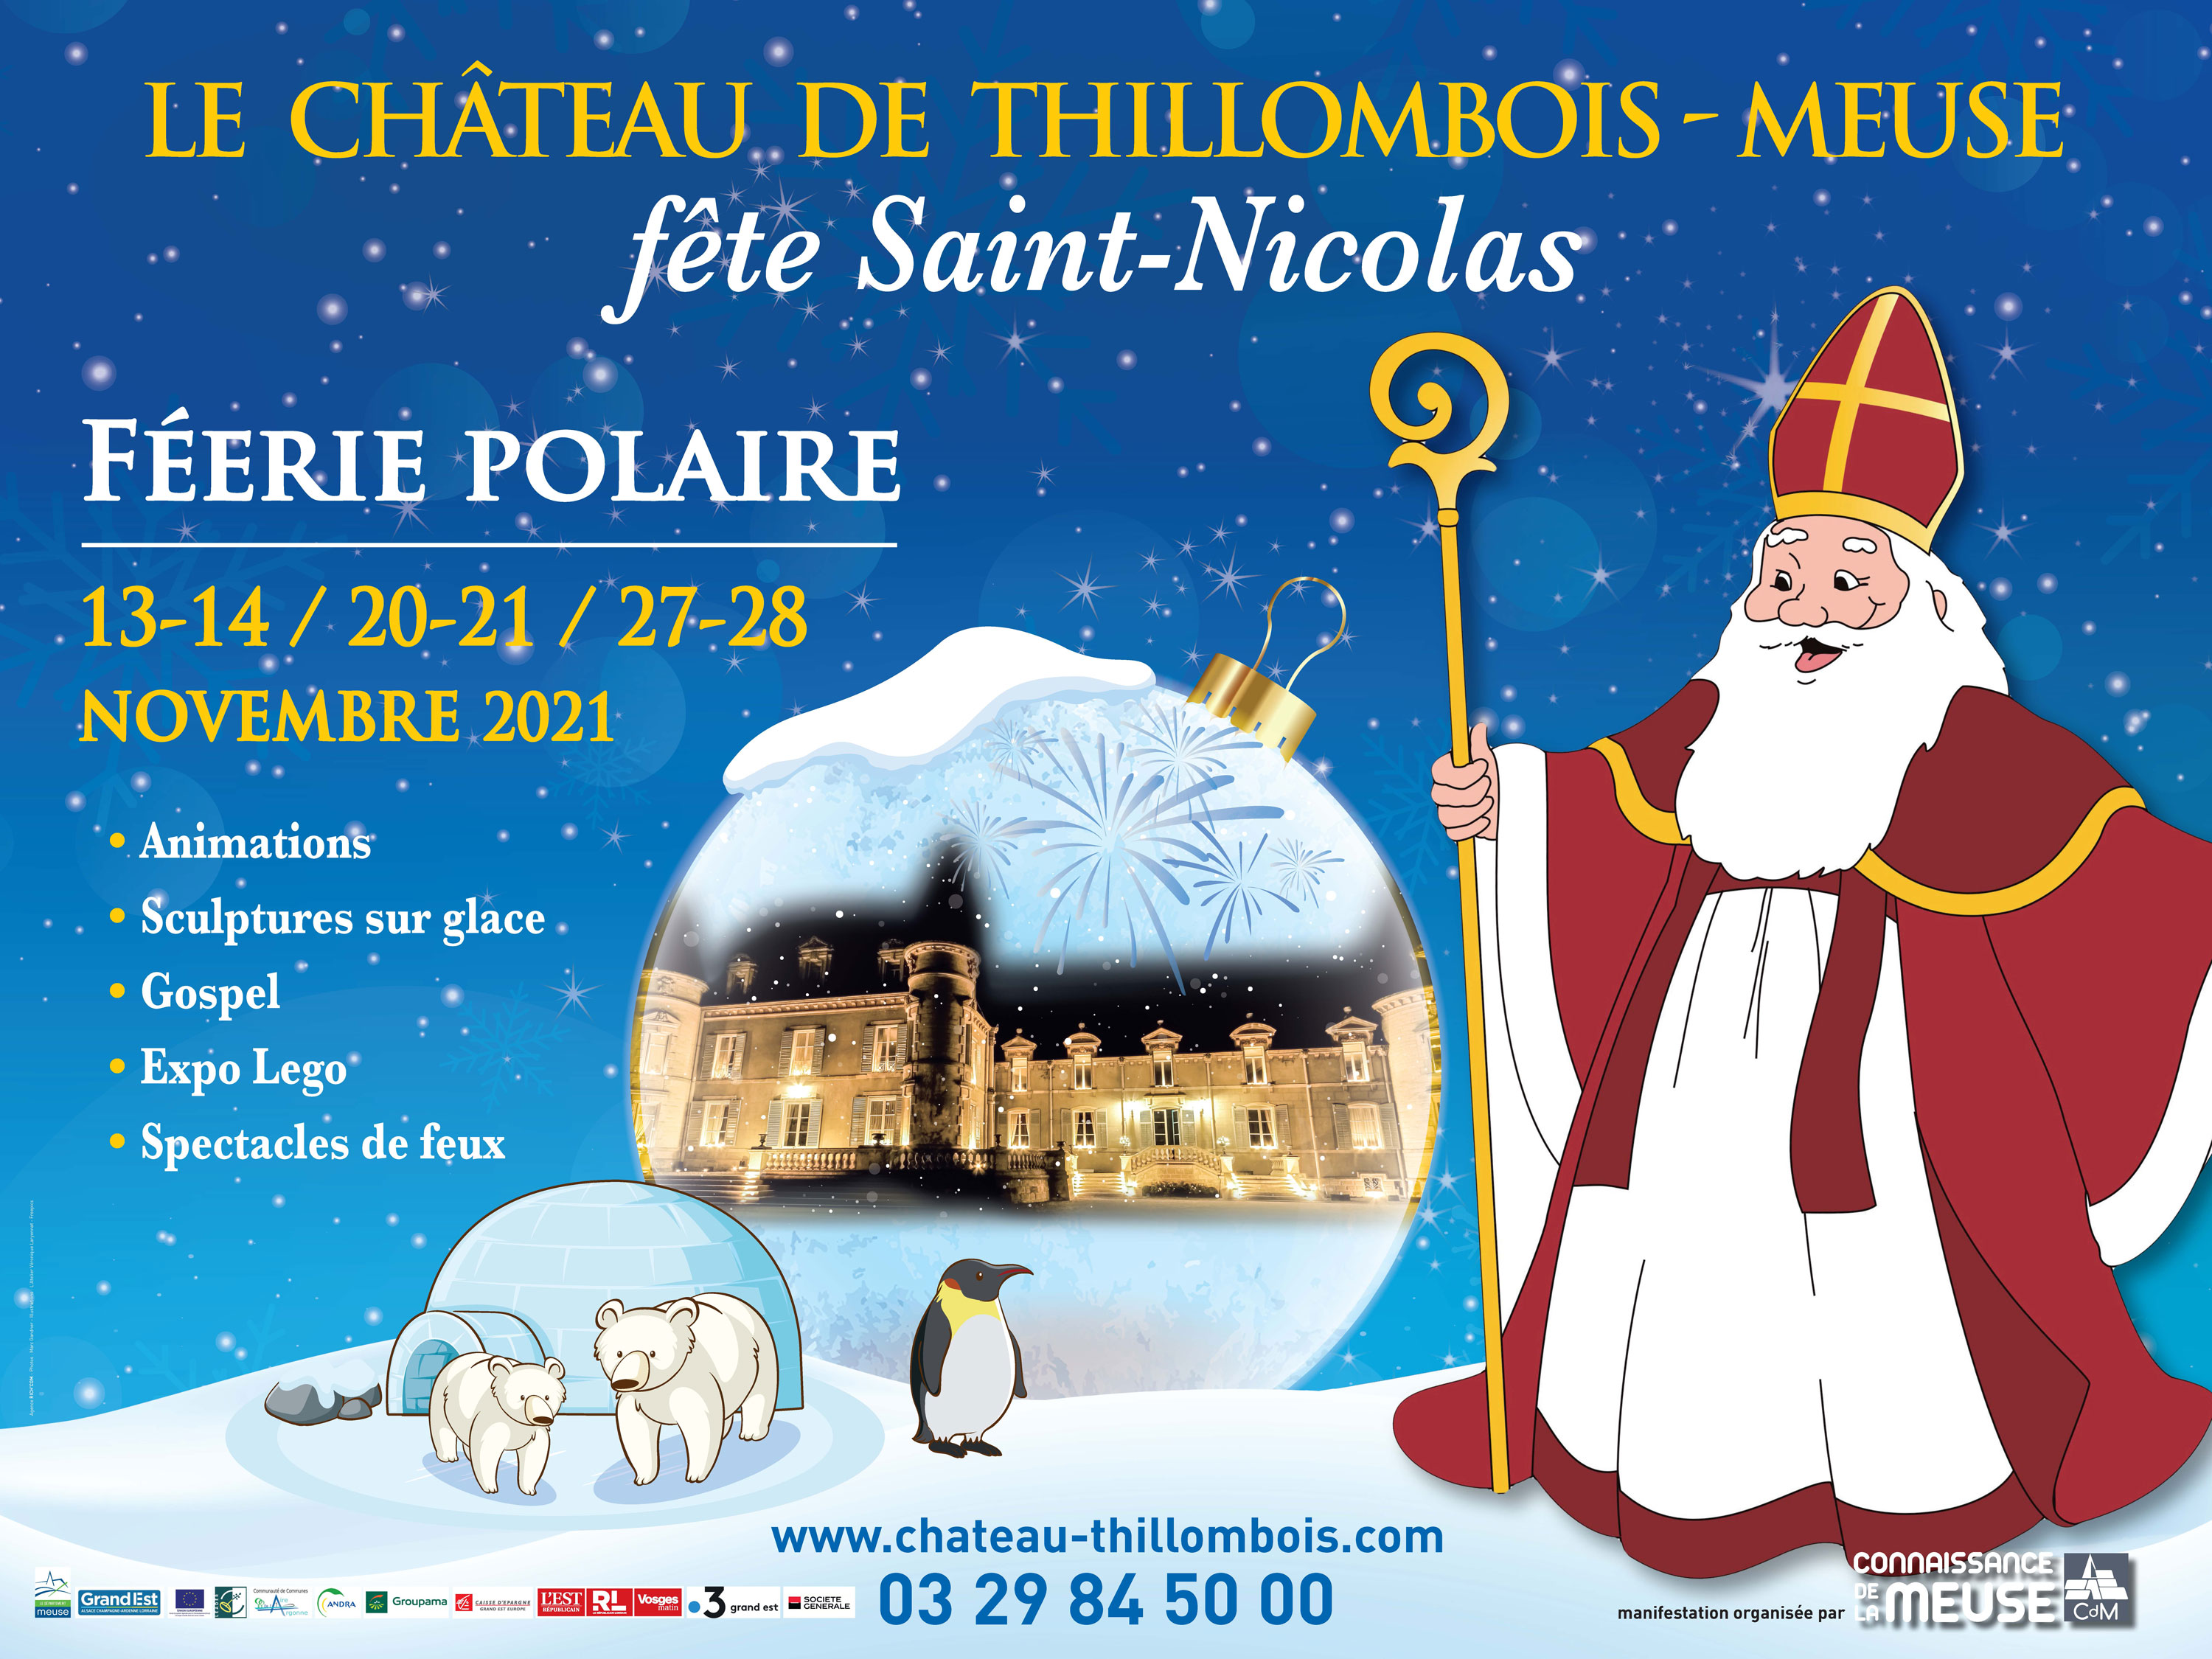 LE CHÂTEAU DE THILLOMBOIS FÊTE SAINT-NICOLAS Jeudi 4 novembre 2021 à 16h30, au château de Thillombois